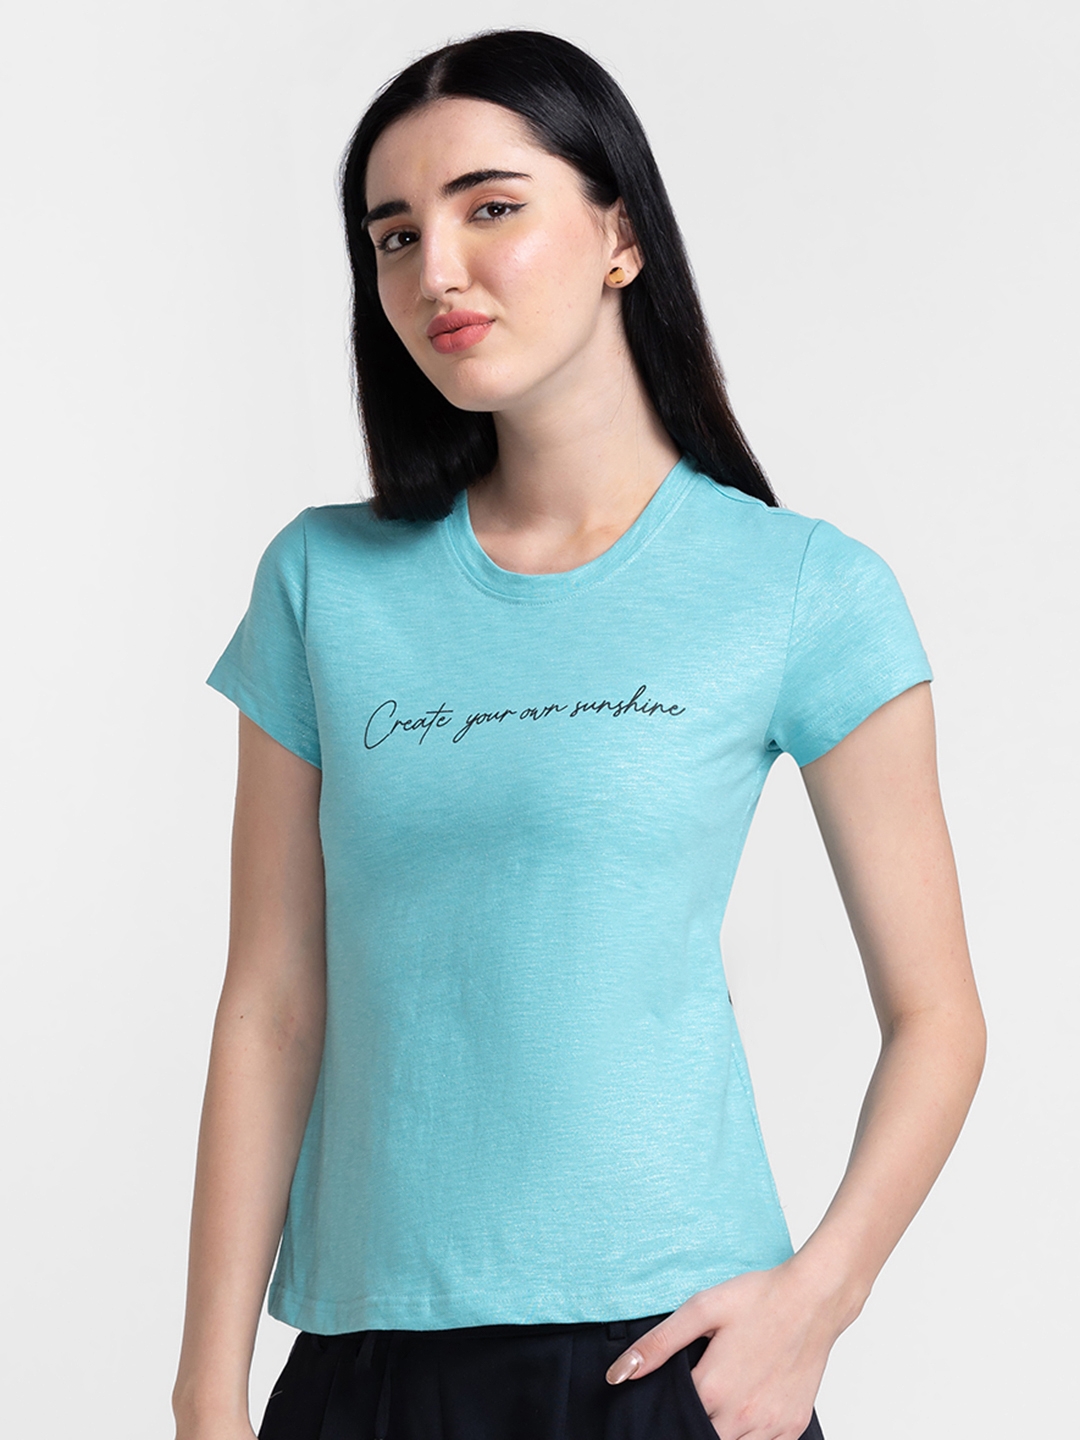 Globus Aqua Printed Tshirt